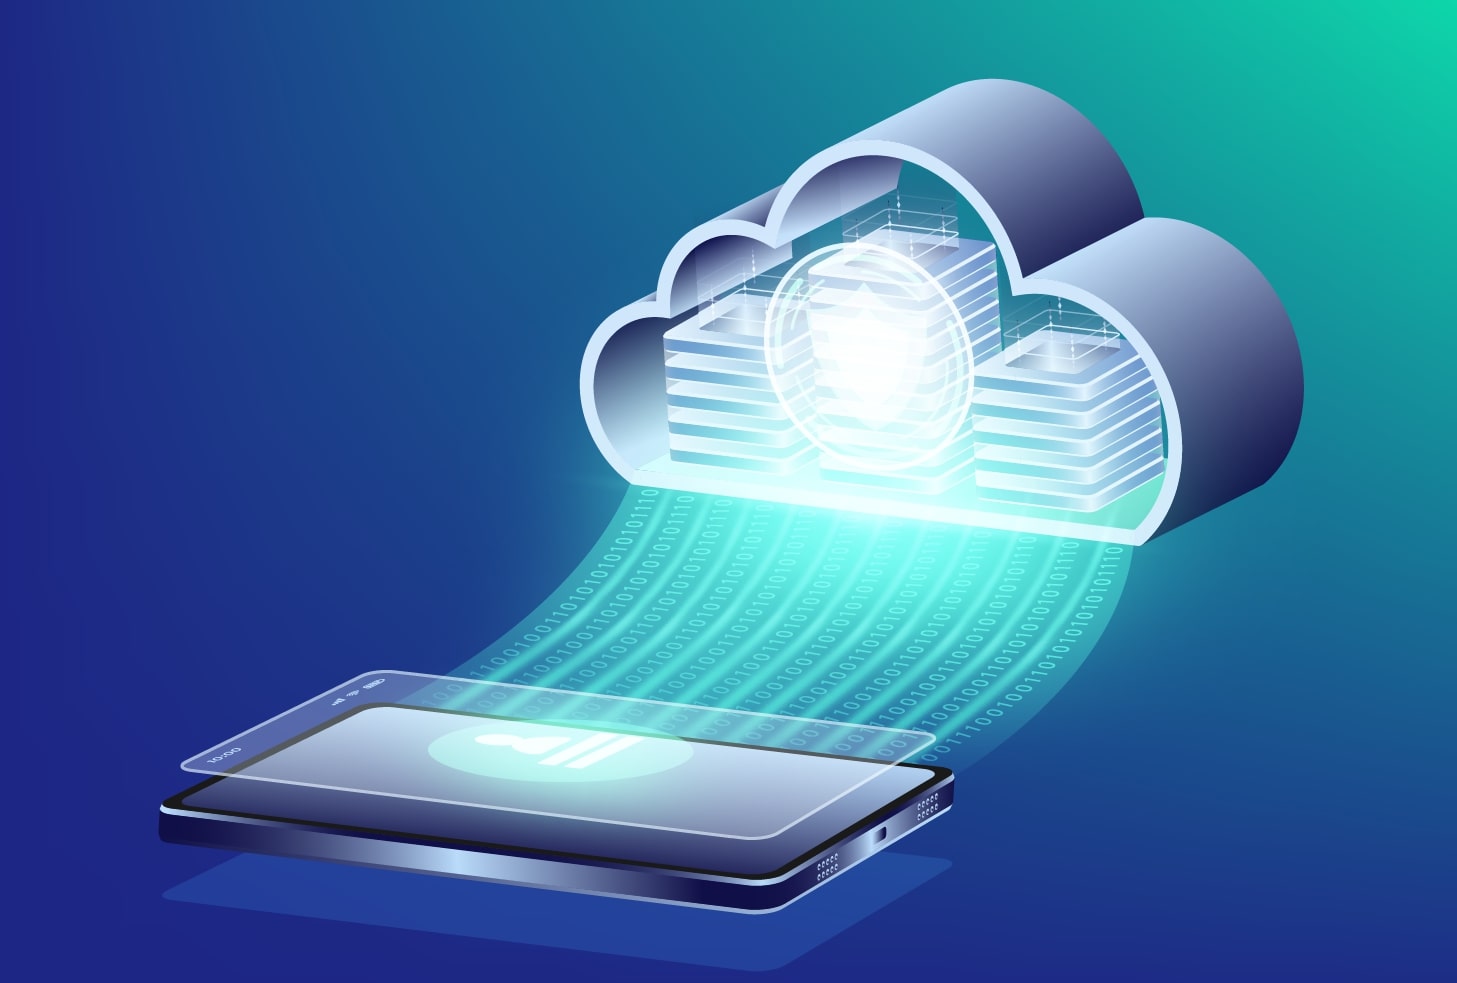 Το Cloud φαίνεται να συνδέεται με κινητό, απεικονίζοντας ένα χαρακτηριστικό του ψηφιακού μετασχηματισμού επιχειρήσεων.